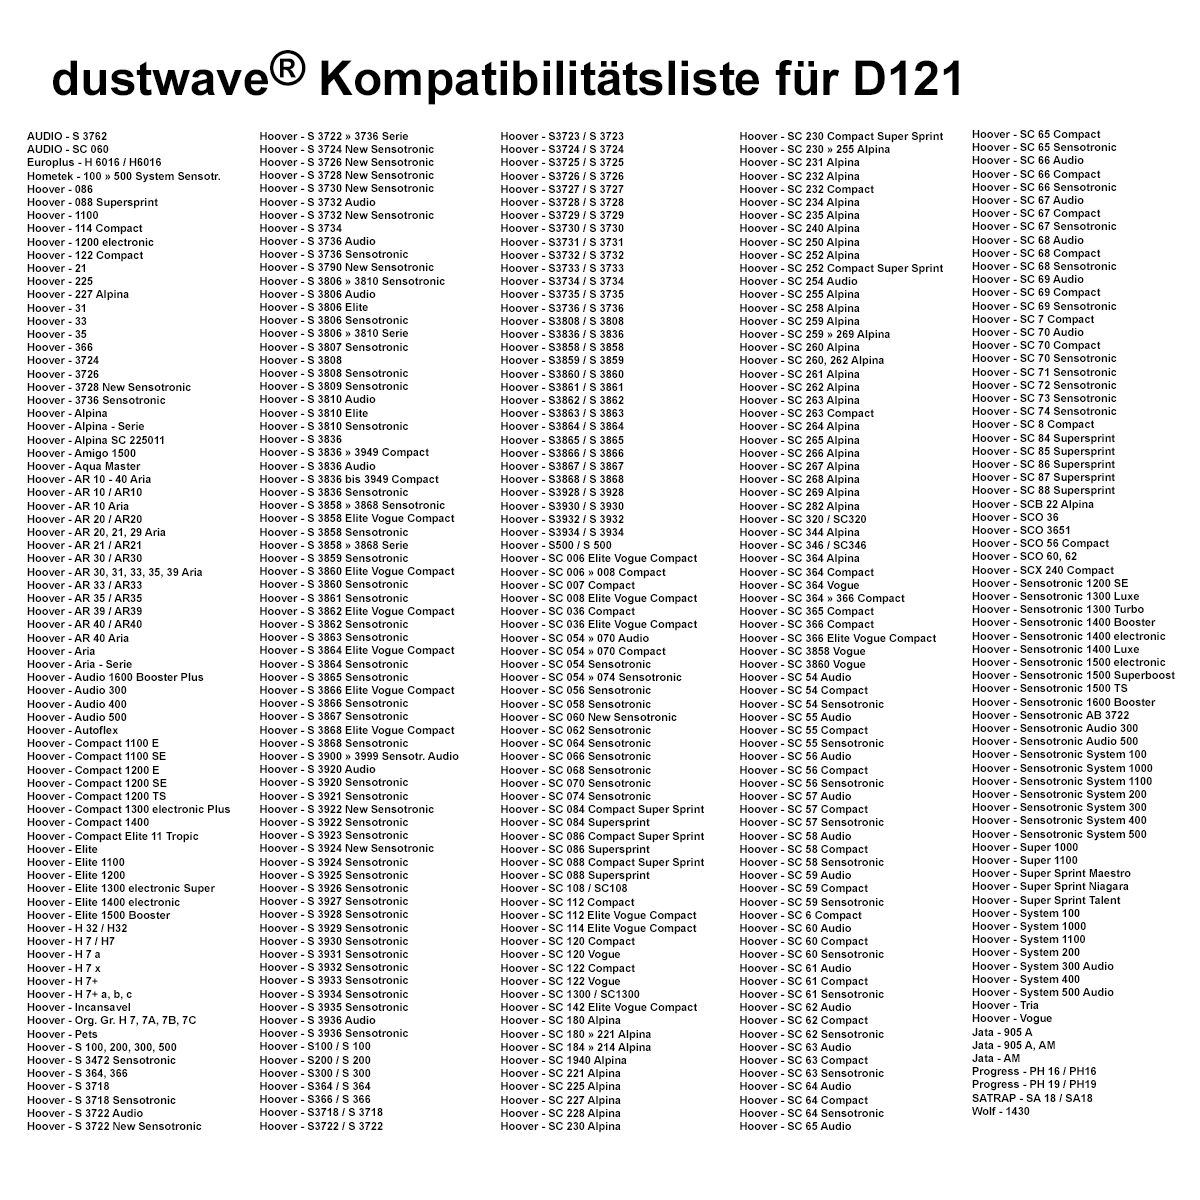 Dustwave® 10 Staubsaugerbeutel für Hoover Aqua Master - hocheffizient, mehrlagiges Mikrovlies mit Hygieneverschluss - Made in Germany